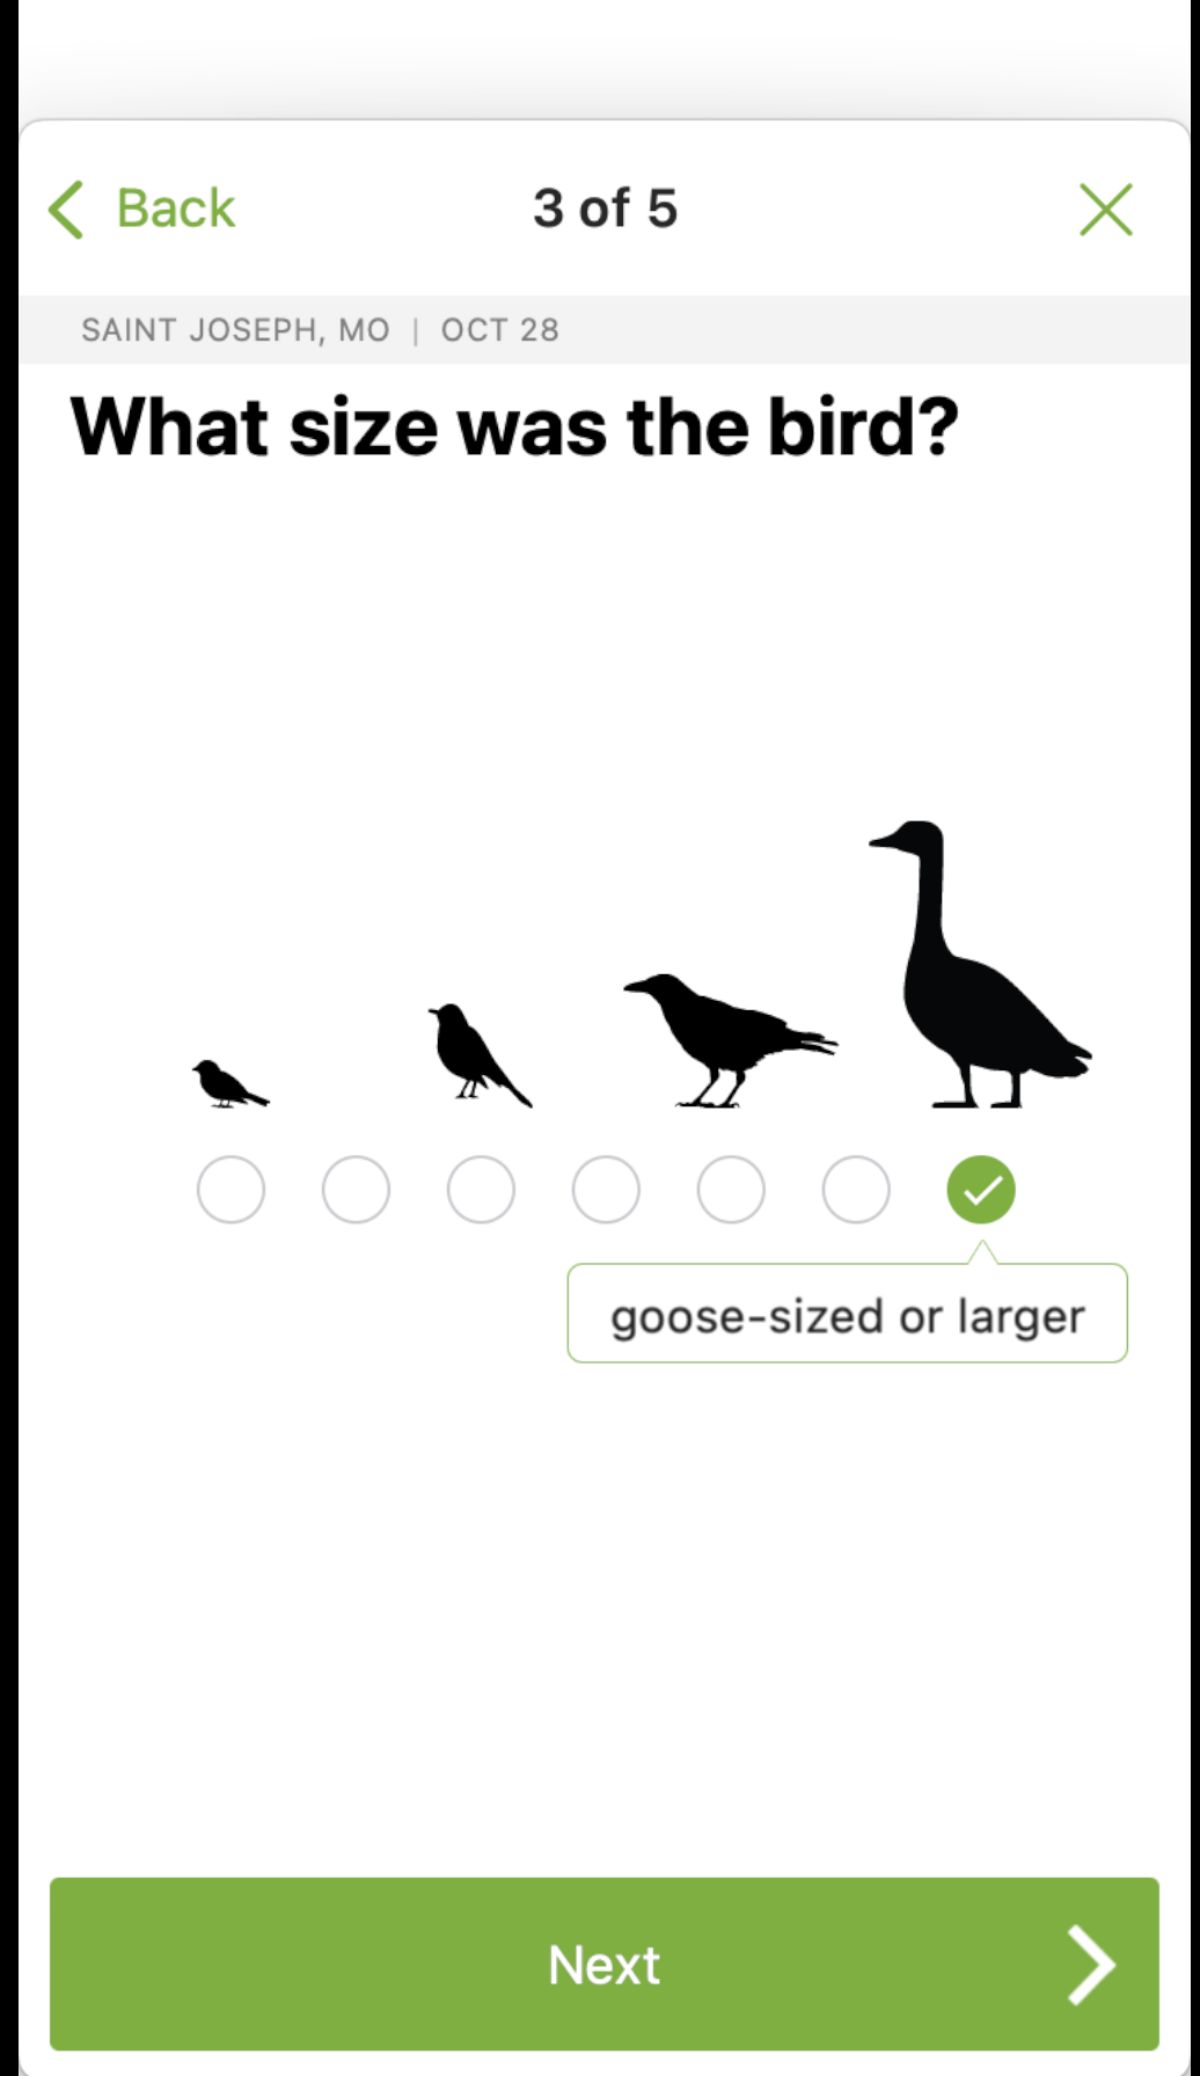 Size used to identify a bird